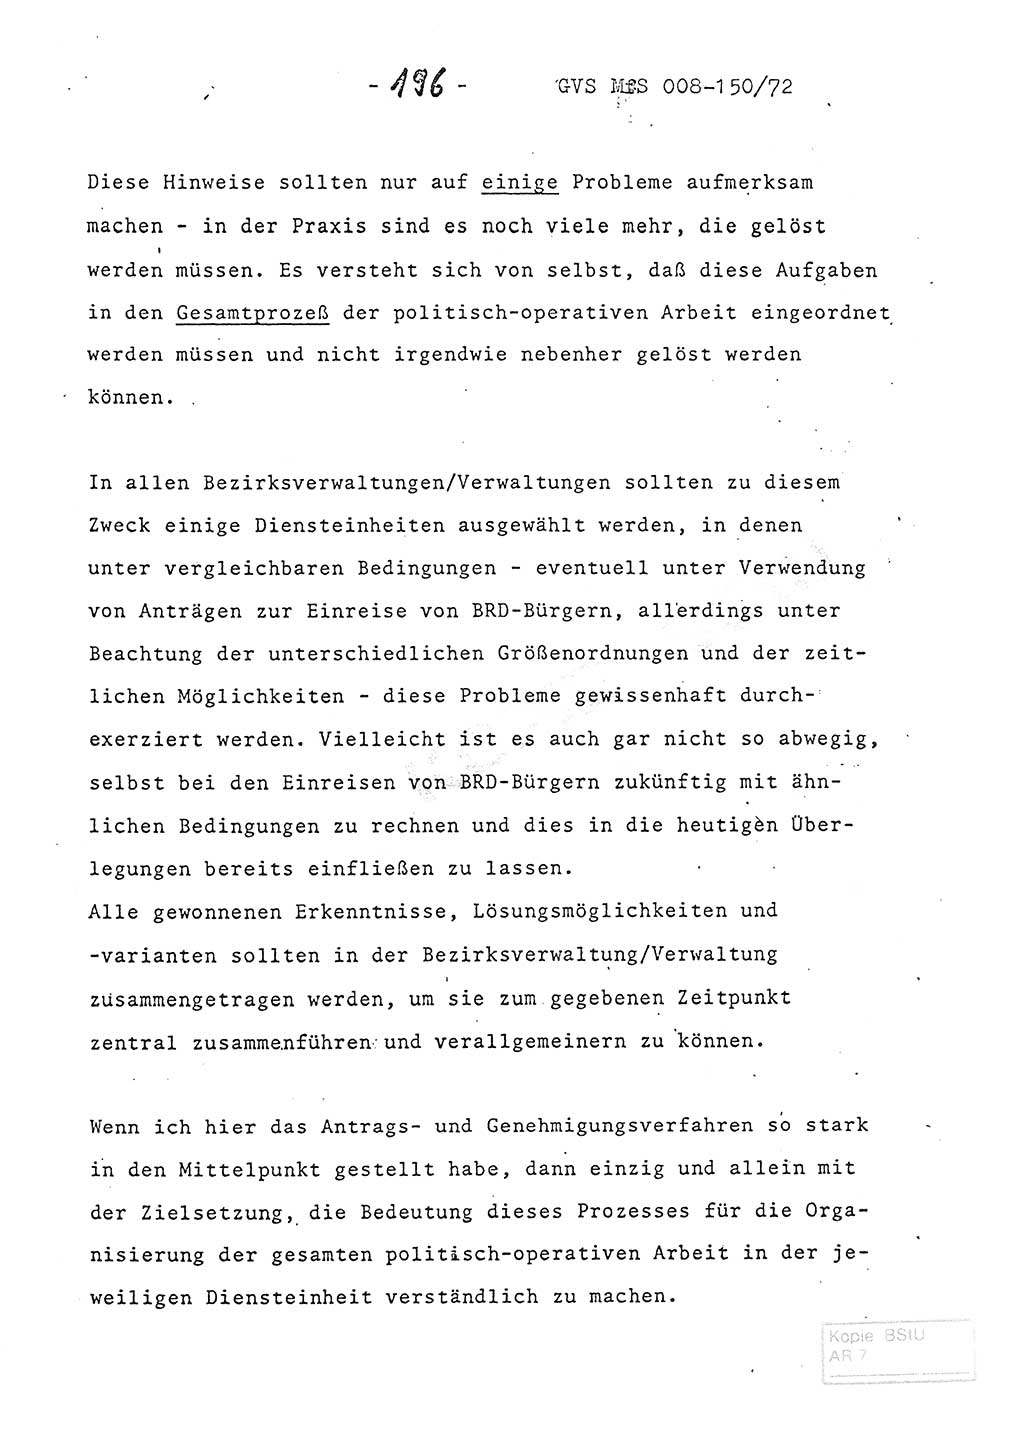 Referat (Entwurf) des Genossen Minister (Generaloberst Erich Mielke) auf der Dienstkonferenz 1972, Ministerium für Staatssicherheit (MfS) [Deutsche Demokratische Republik (DDR)], Der Minister, Geheime Verschlußsache (GVS) 008-150/72, Berlin 25.2.1972, Seite 196 (Ref. Entw. DK MfS DDR Min. GVS 008-150/72 1972, S. 196)